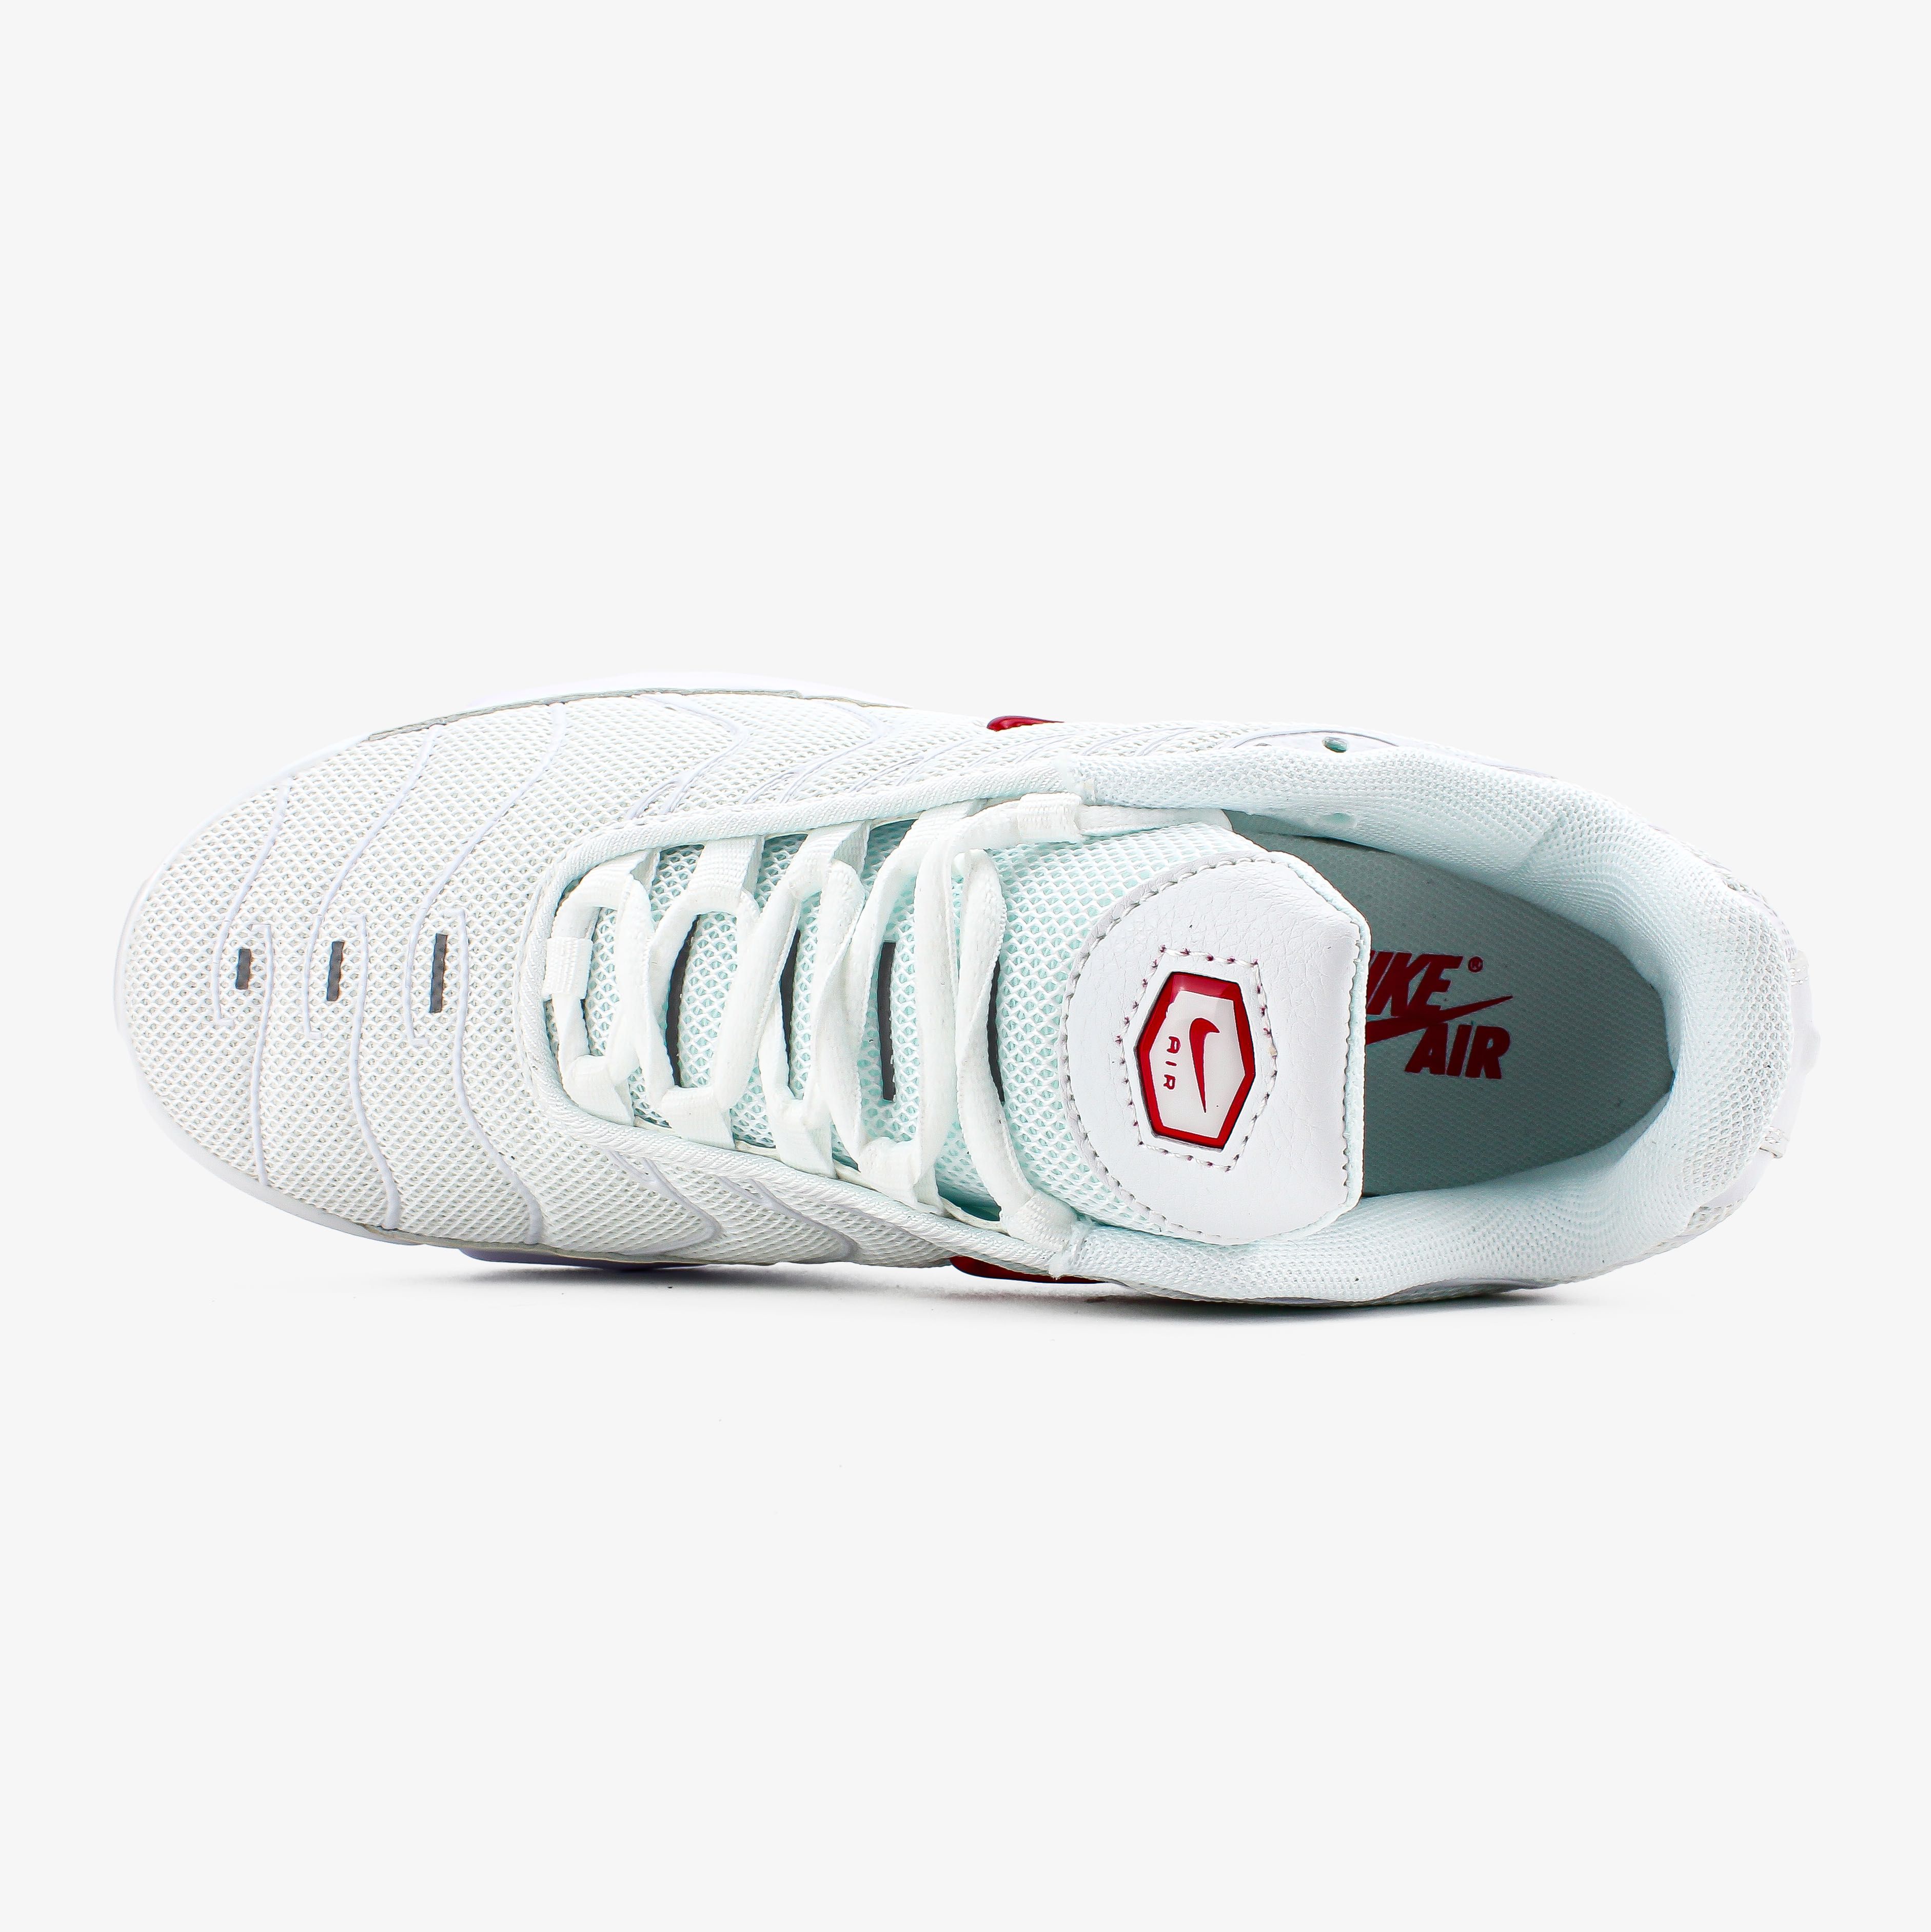 Мужские кроссовки Nike Air Max Tn "White/Red" Размеры 41-45